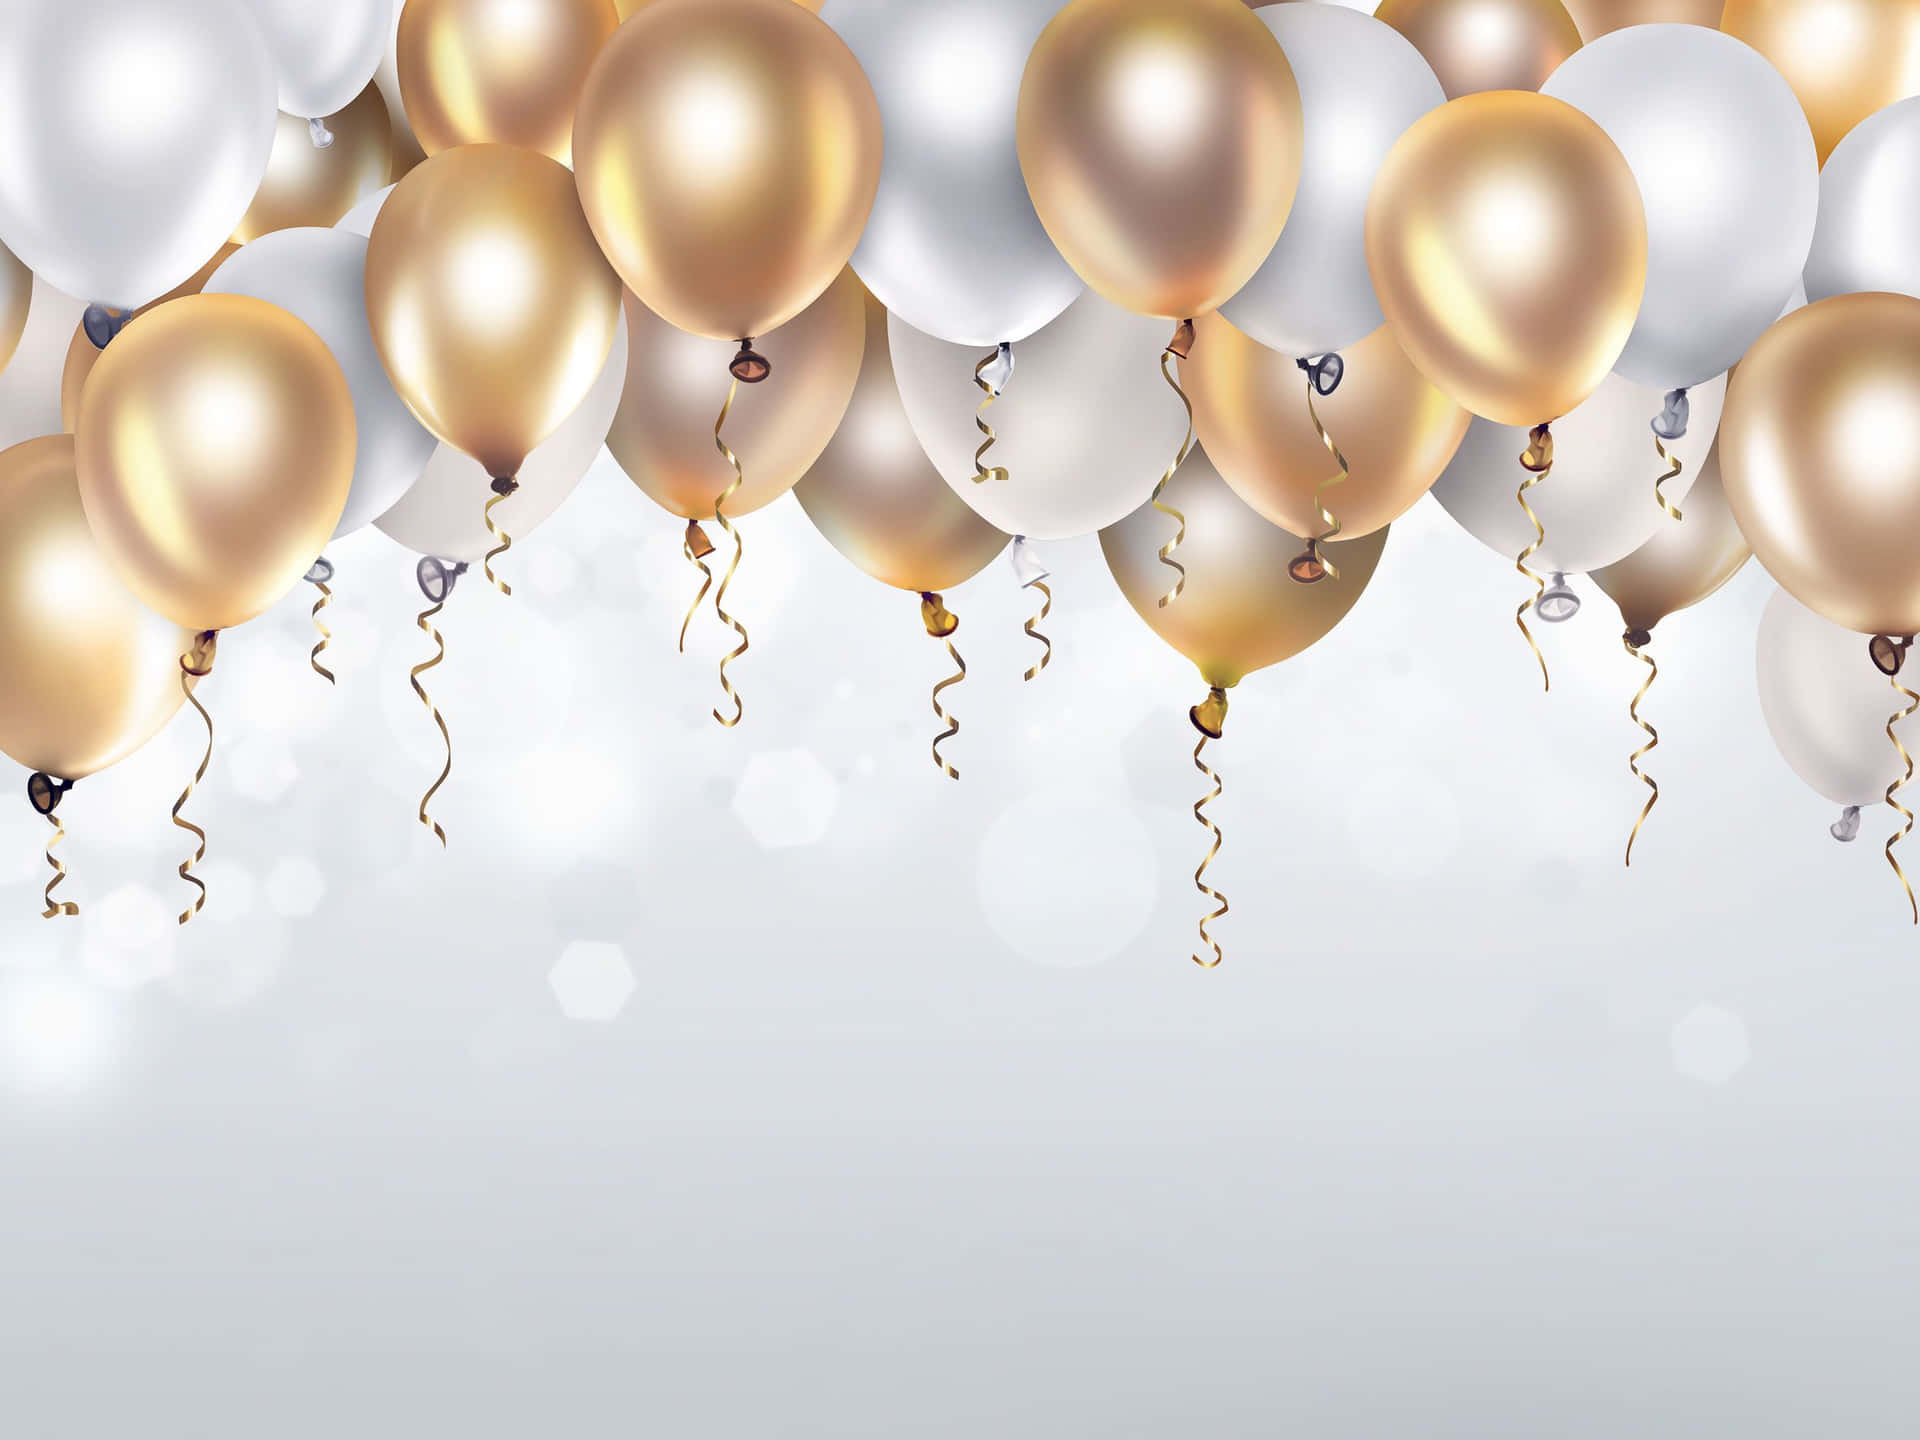 Fødselsdagsballoner hvid og guld billede